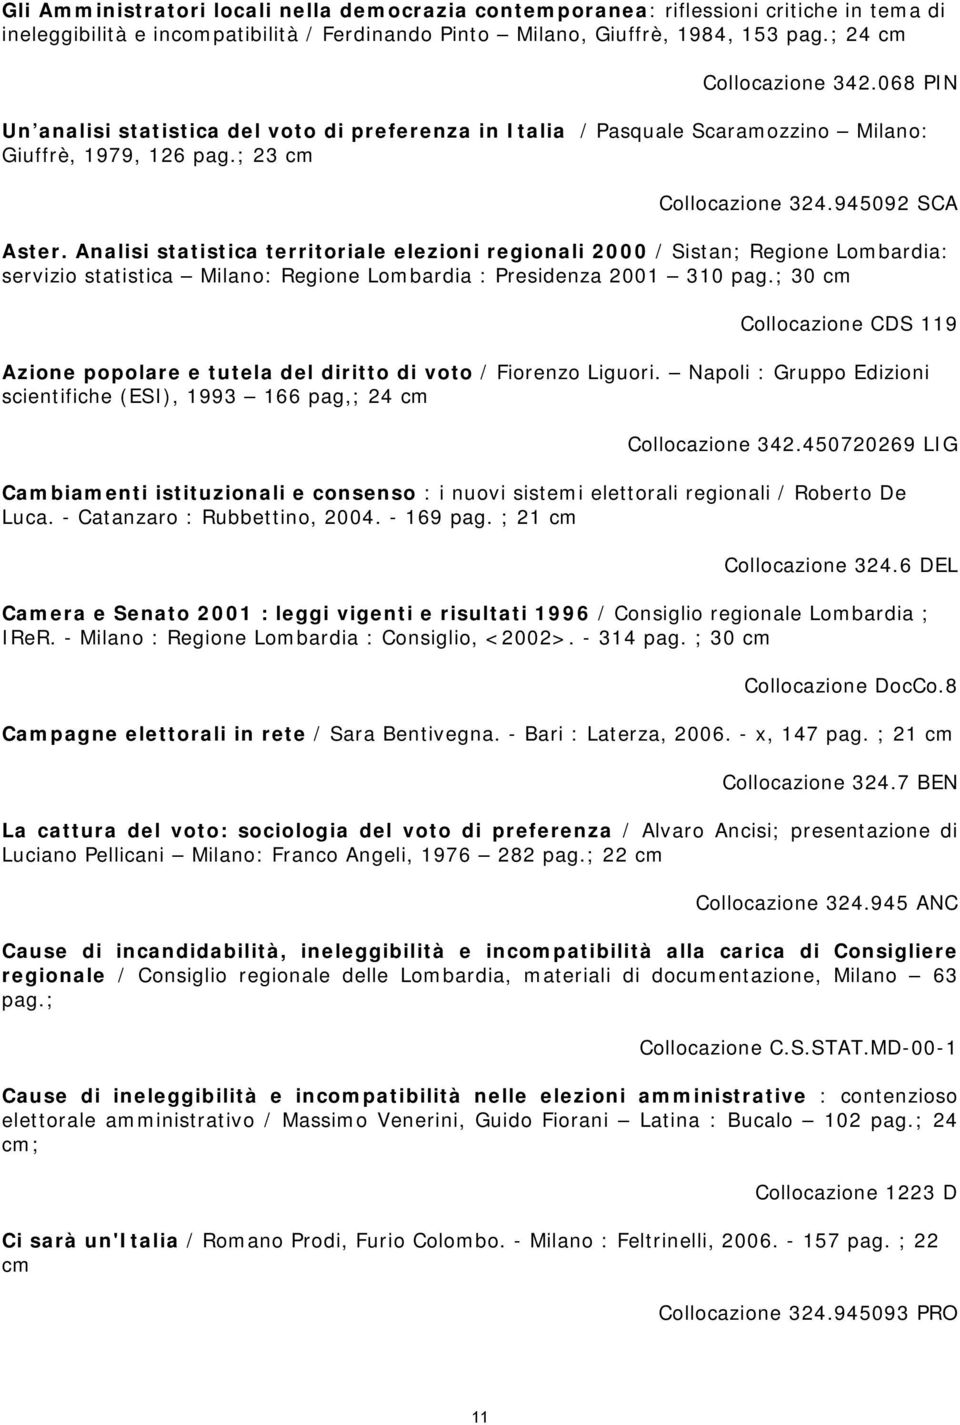 Analisi statistica territoriale elezioni regionali 2000 / Sistan; Regione Lombardia: servizio statistica Milano: Regione Lombardia : Presidenza 2001 310 pag.